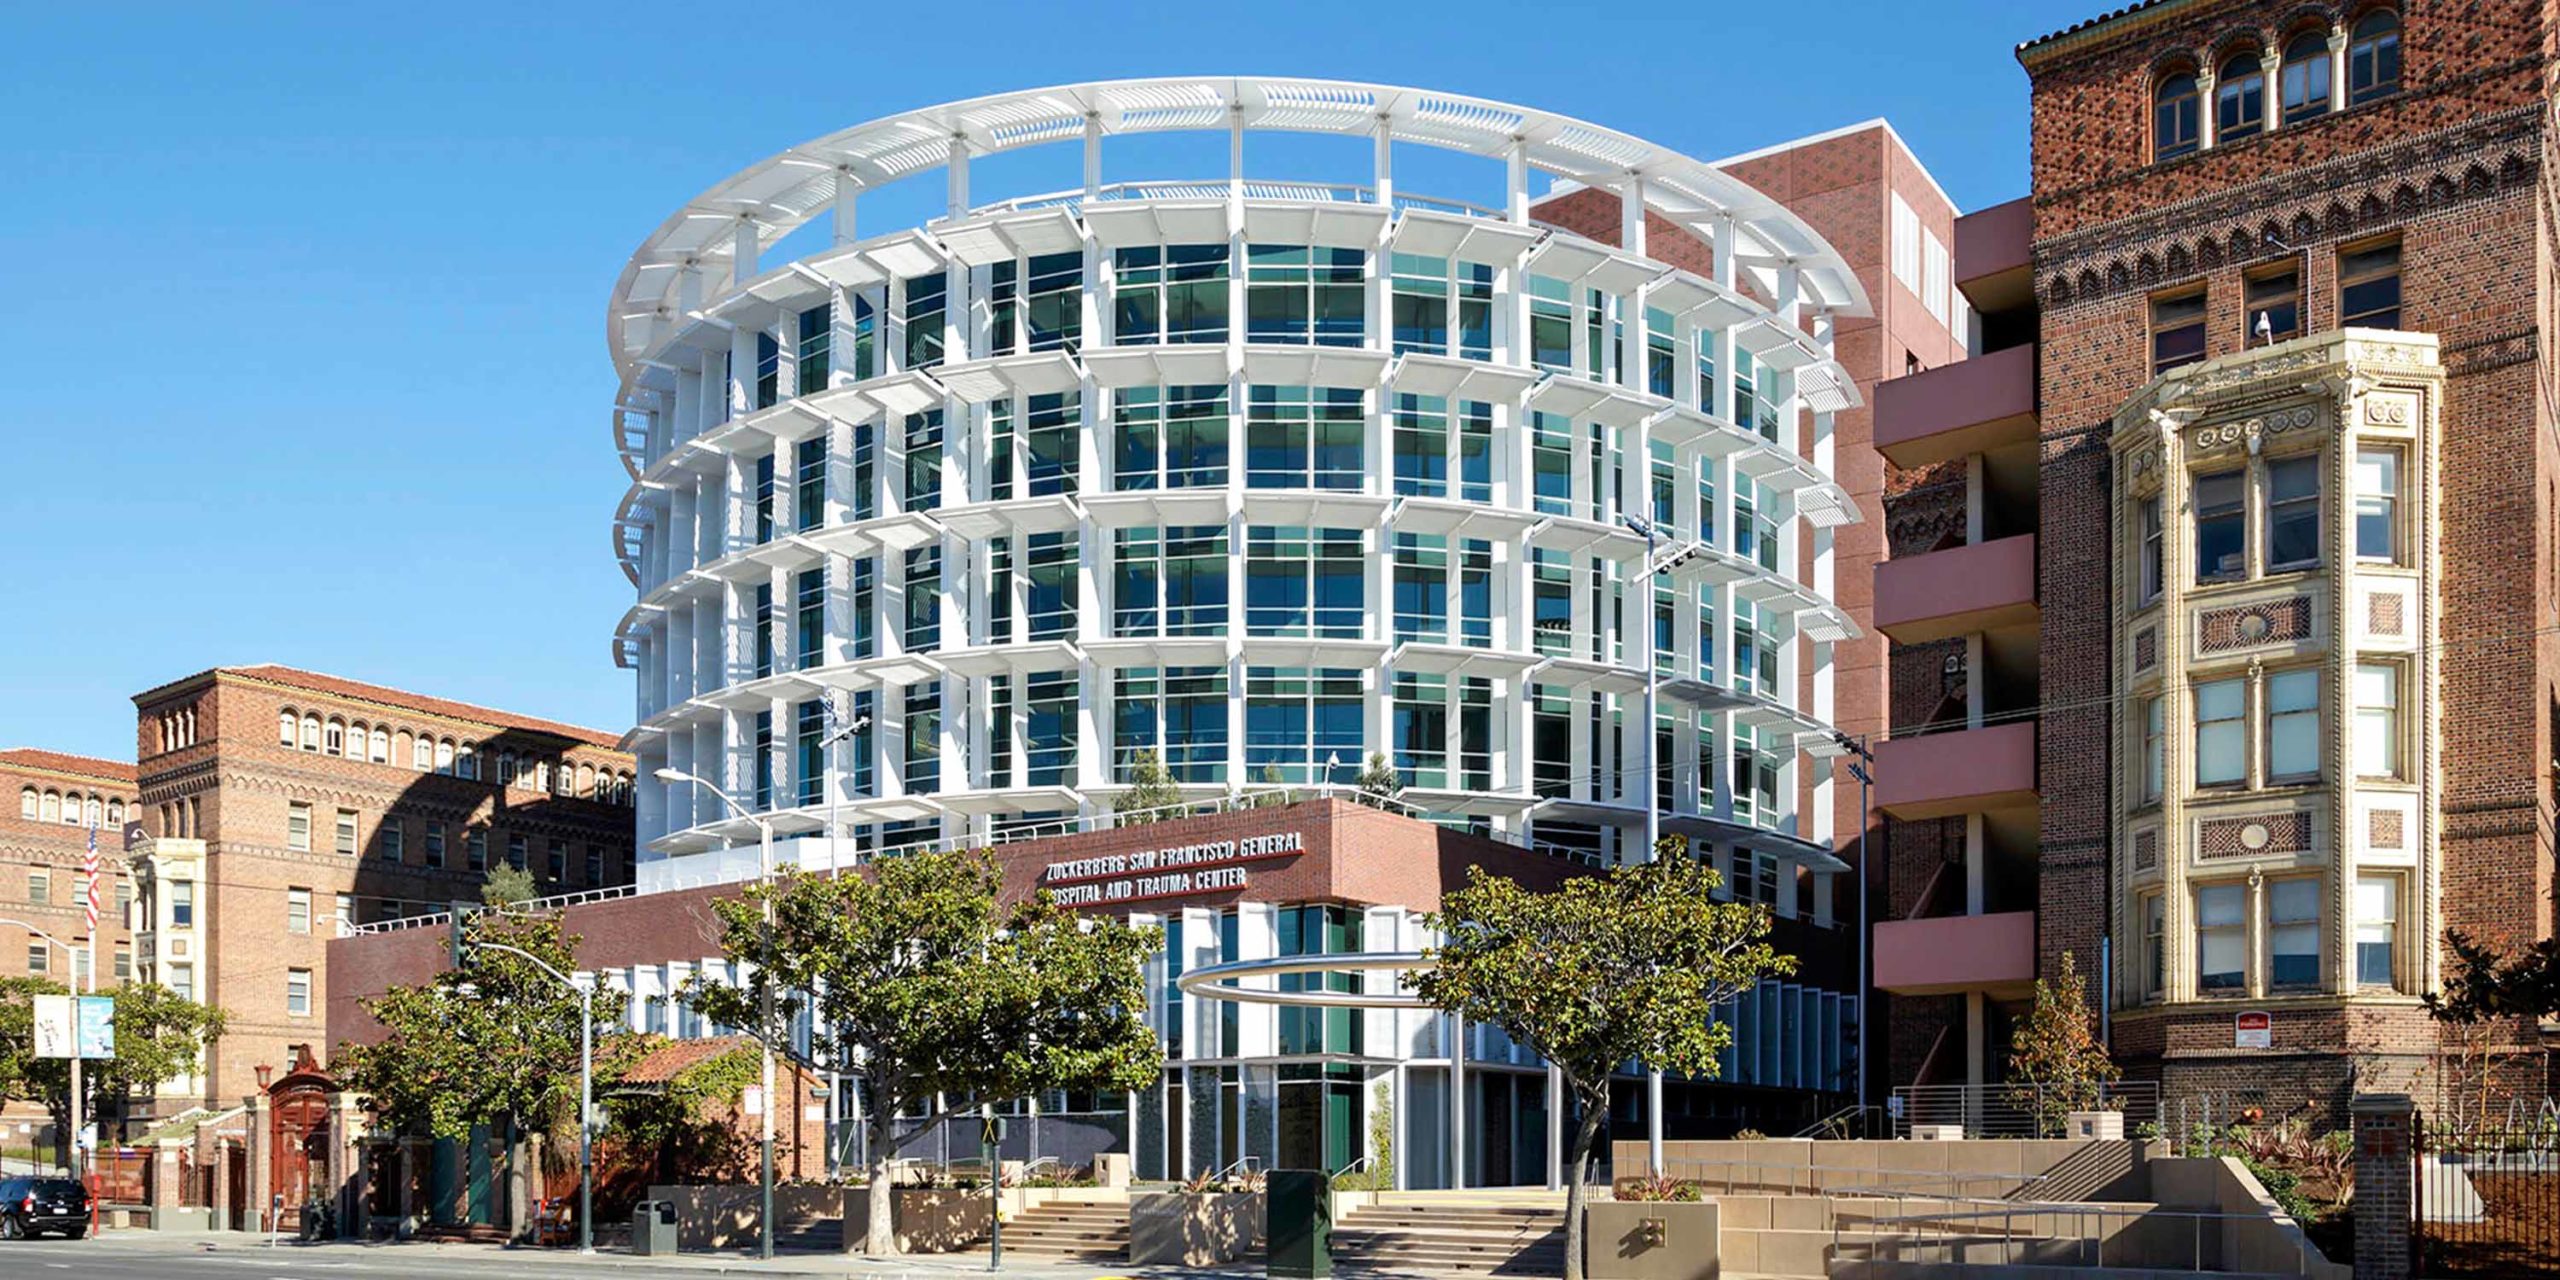 Zuckerberg San Francisco General Hospital header image #3